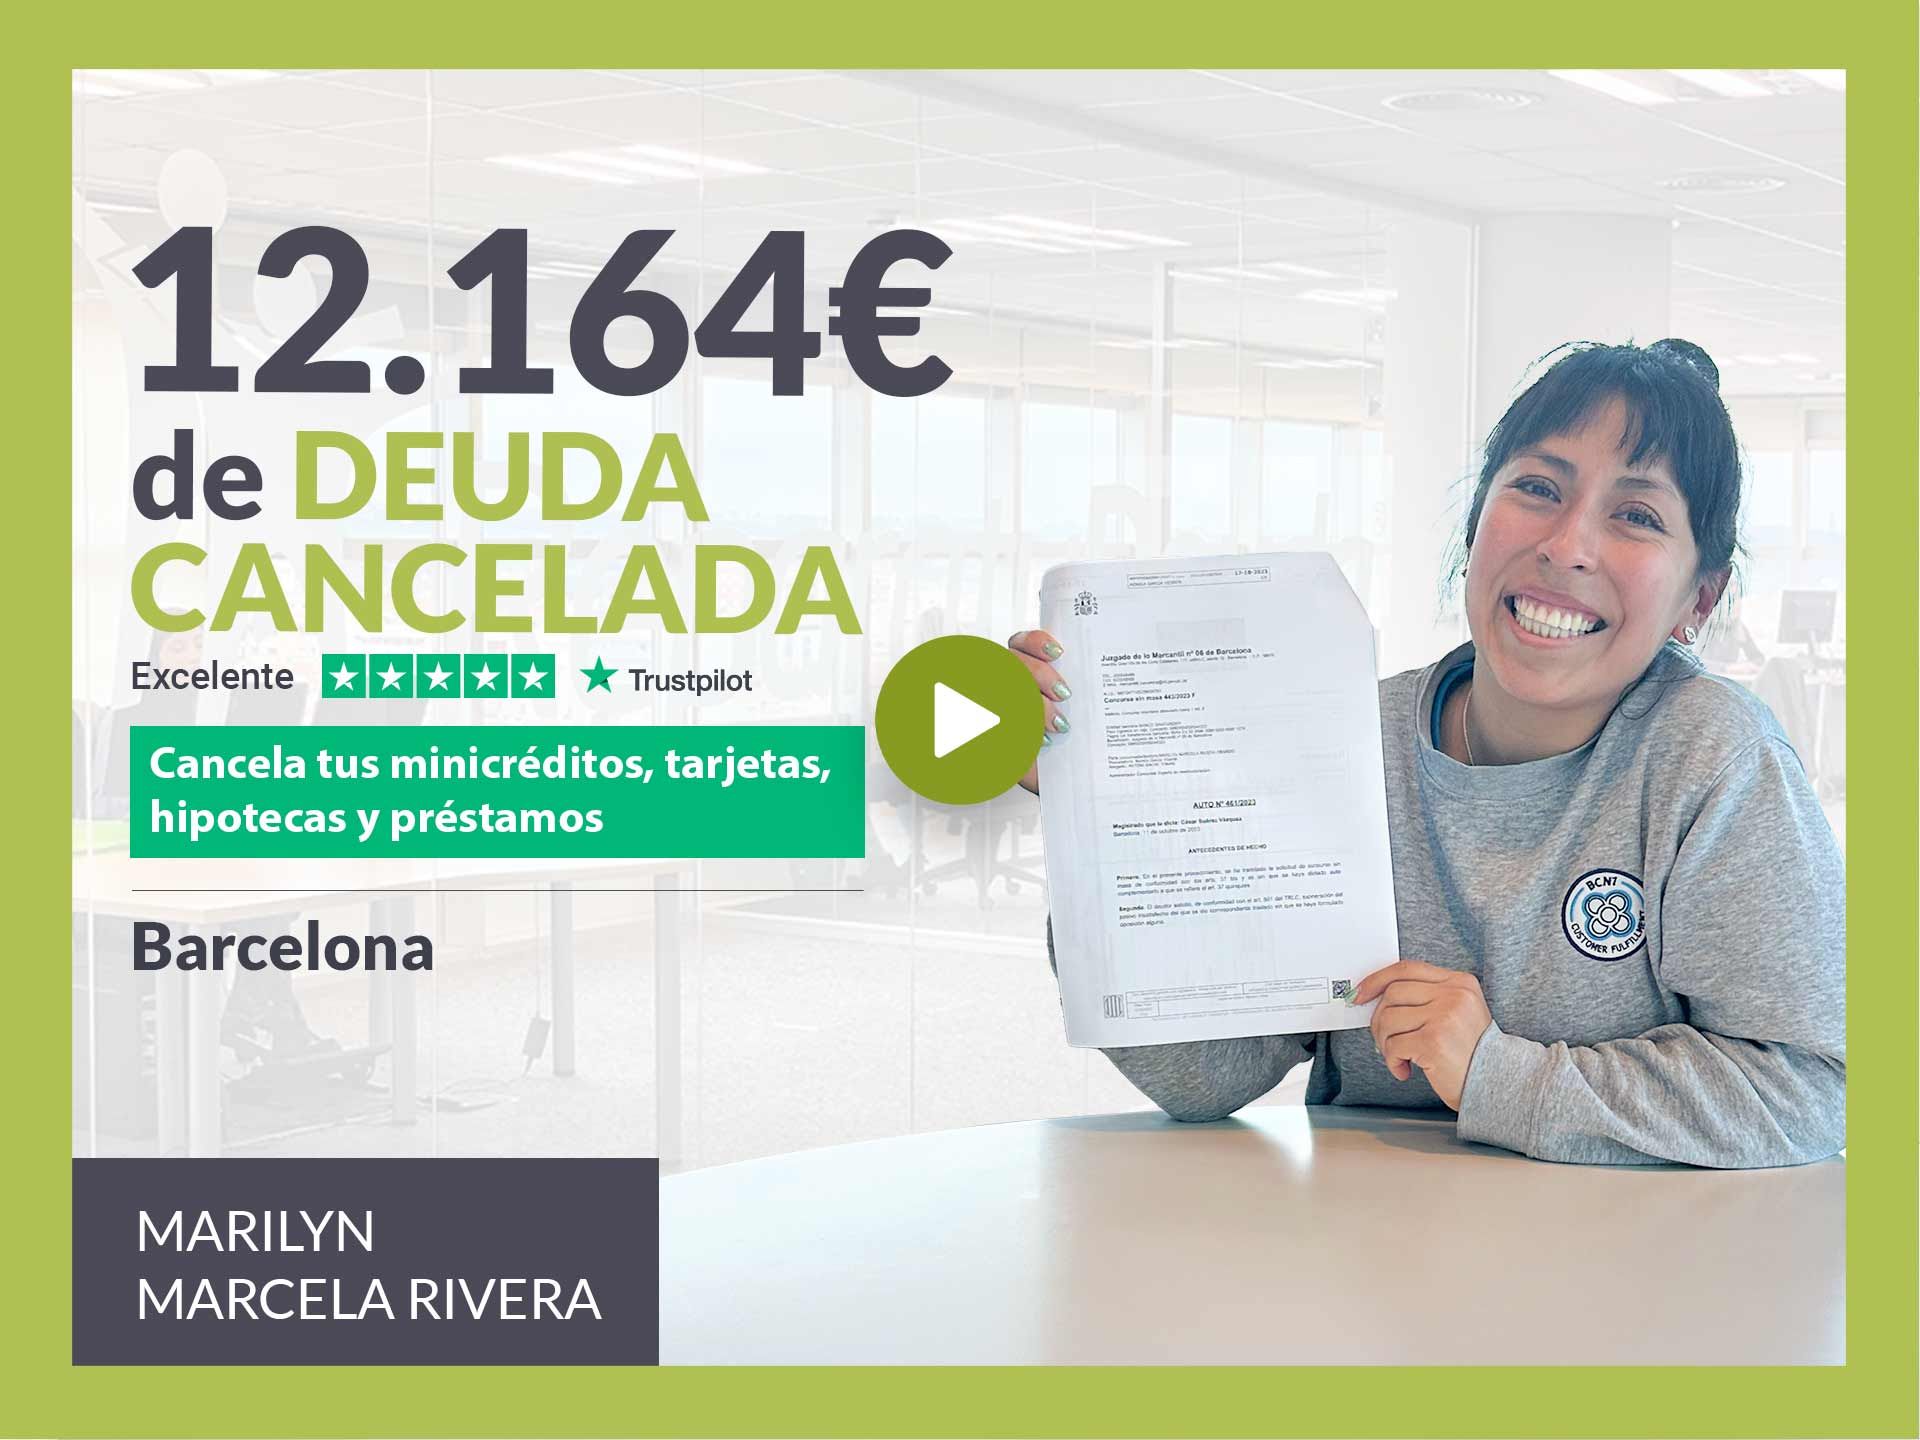 Repara tu Deuda Abogados cancela 12.164? en Barcelona (Catalunya) con la Ley de Segunda Oportunidad